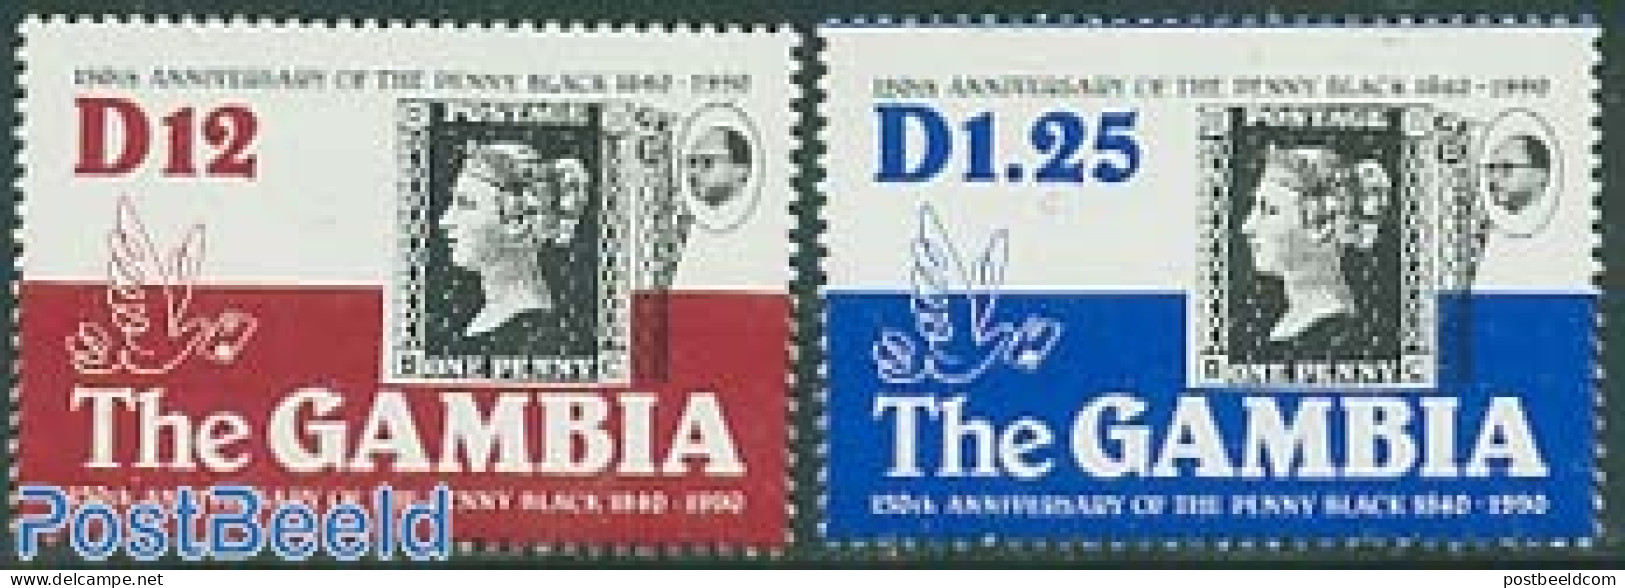 Gambia 1990 150 Years Stamps 2v, Mint NH, Stamps On Stamps - Briefmarken Auf Briefmarken